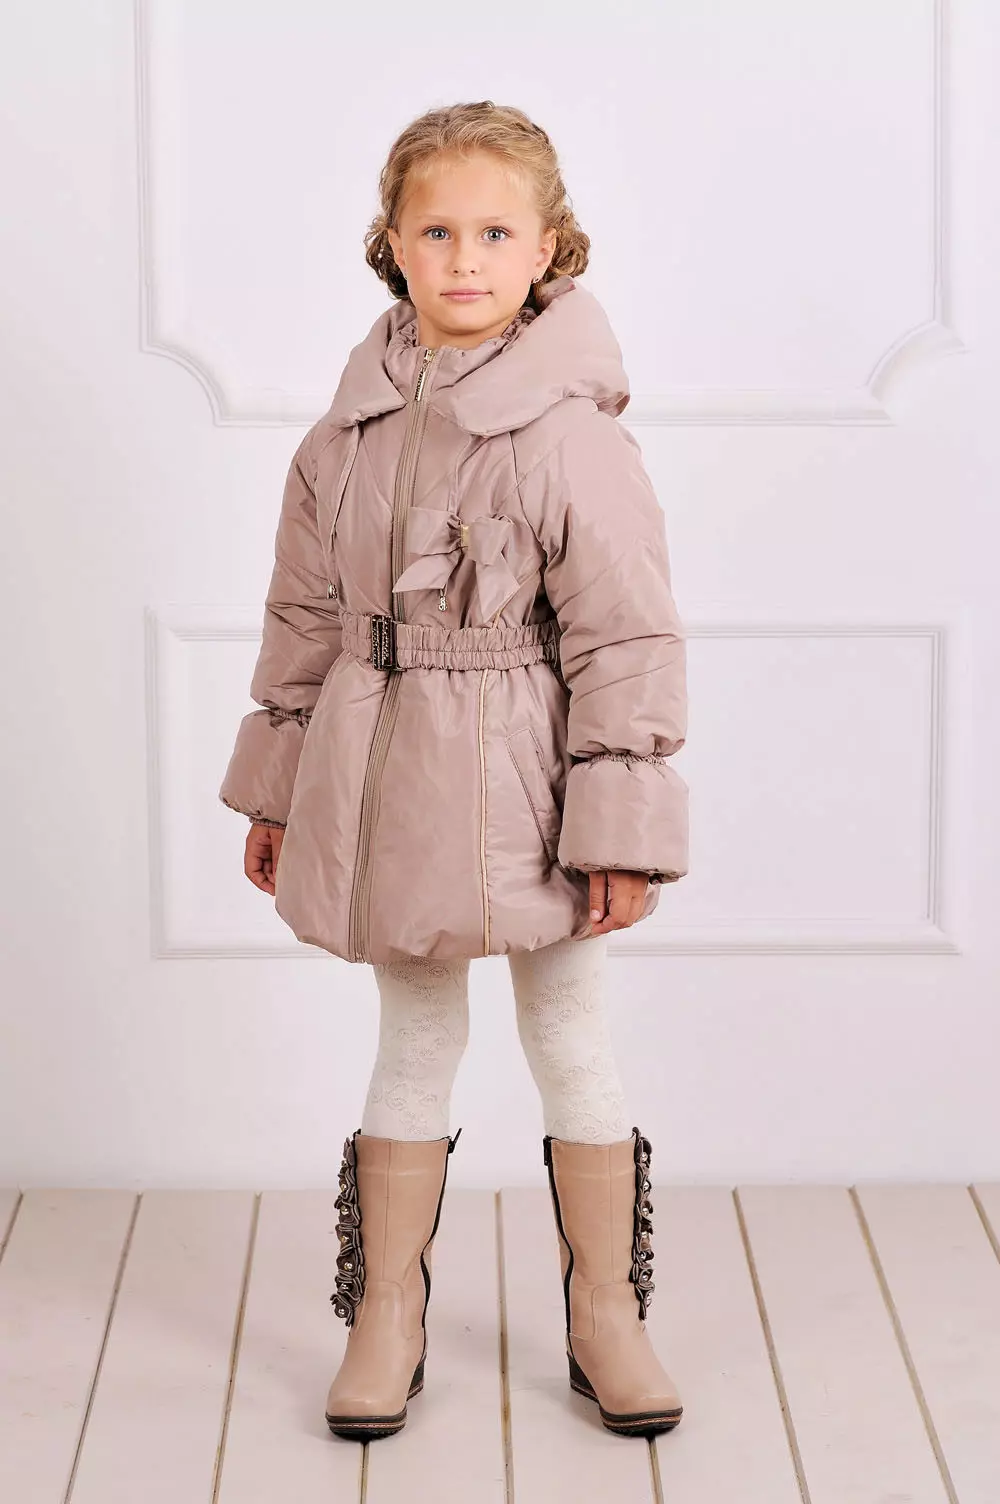 어린이 코트 (102 장의 사진) : 모직, 핀란드어, Zara, Downed, Dolce Gabbana, Shingry 훈련, 레드, 상어 코트, 시장 596_27